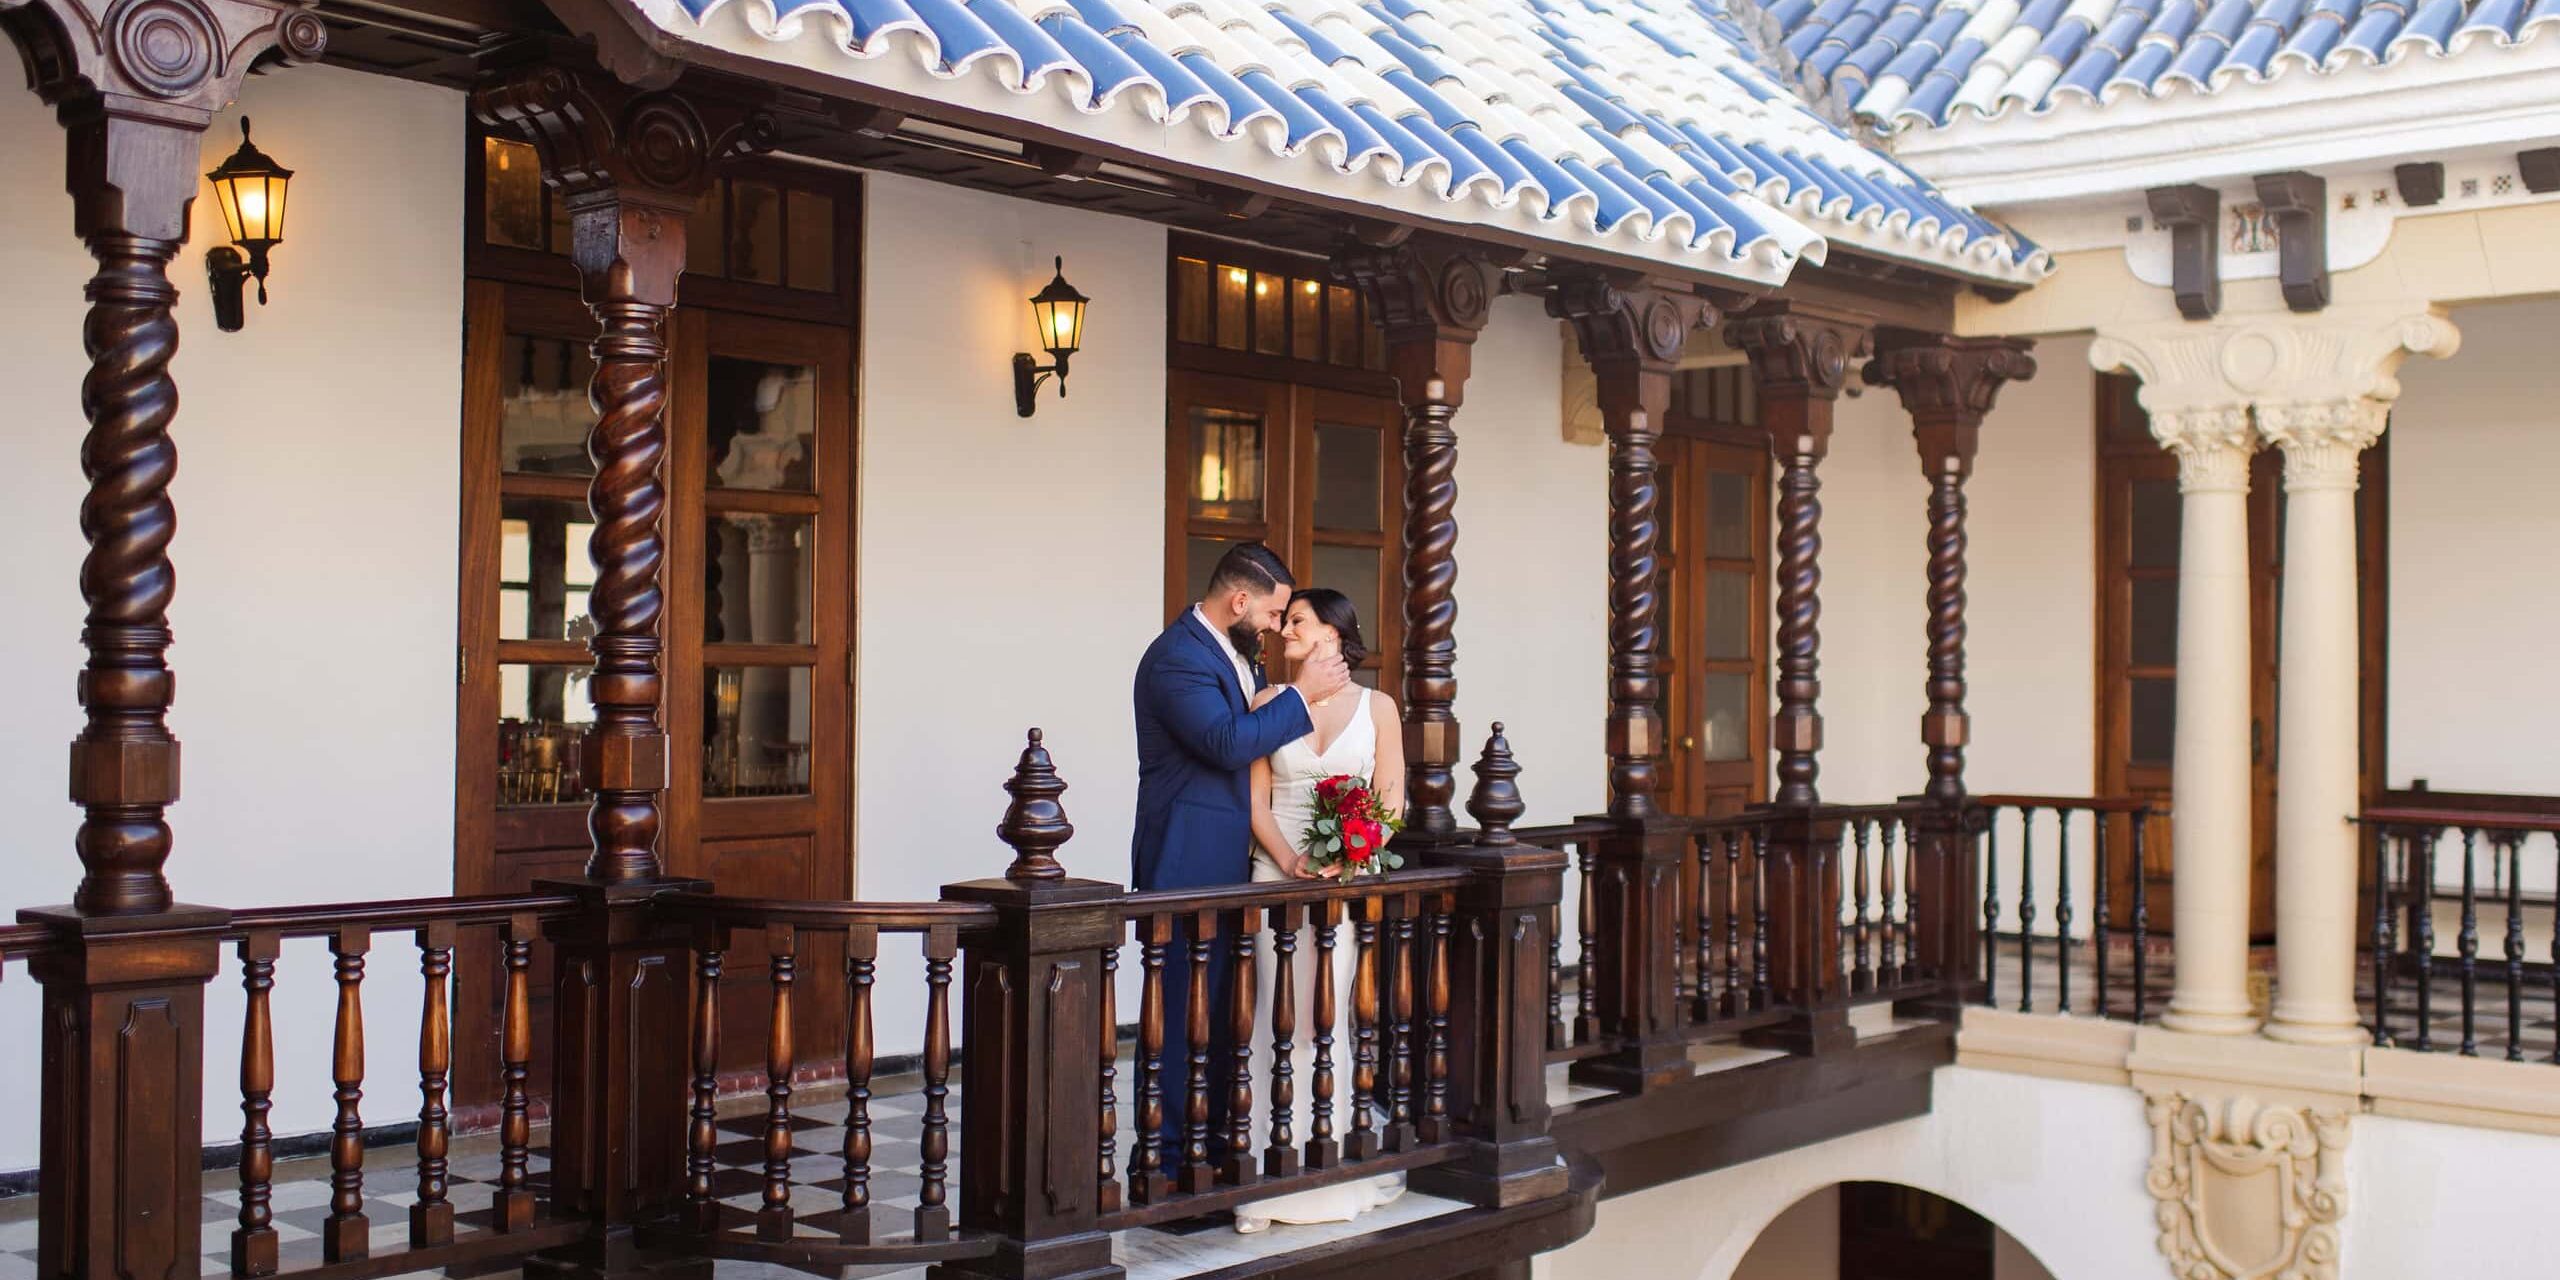 wedding photography in casa de espana in san juan puerto rico